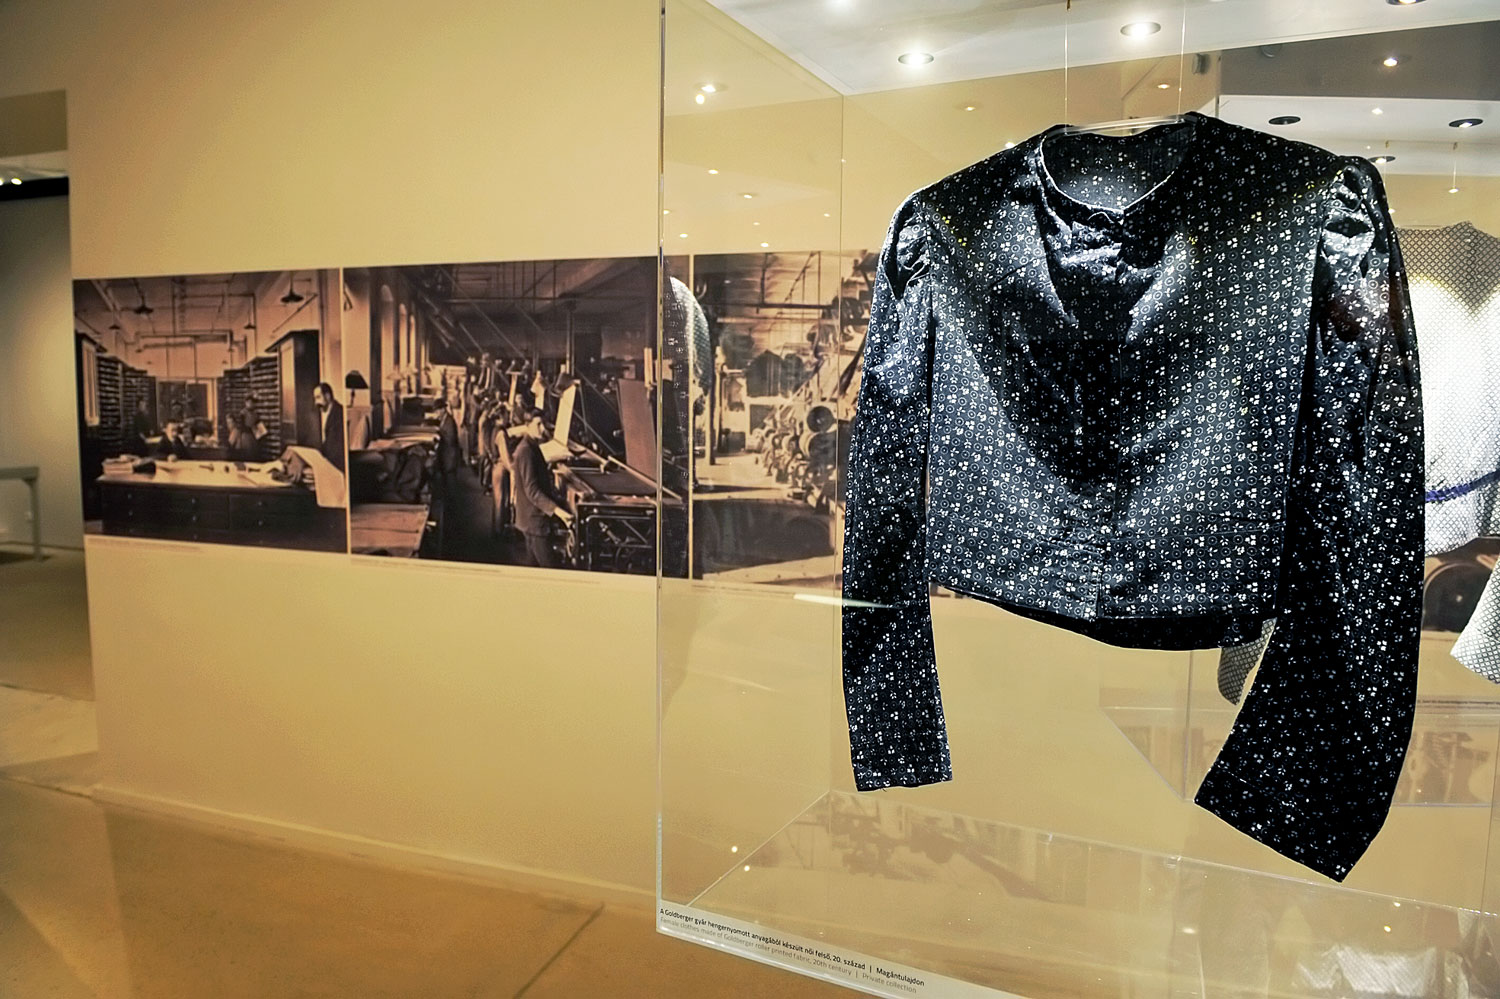 Példa a sikerre: a Goldberger Textilipari Gyűjtemény Az év múzeuma díjat is megkapta 